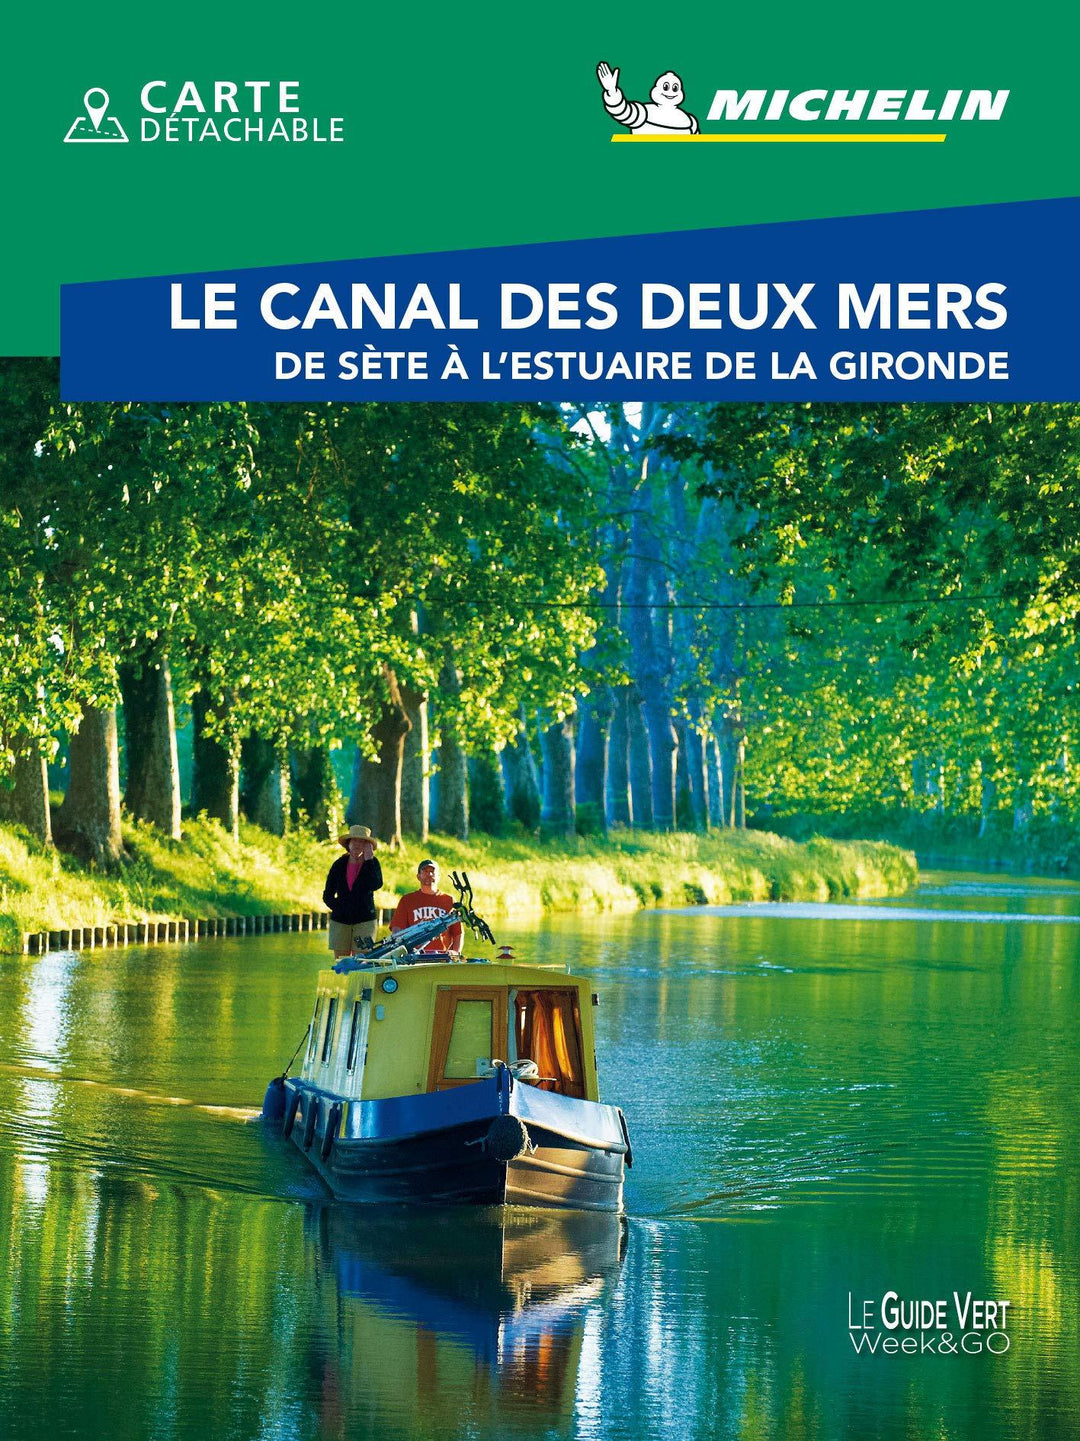 Guide Vert Week End - Canal des deux mers - Édition 2021 | Michelin guide de voyage Michelin 